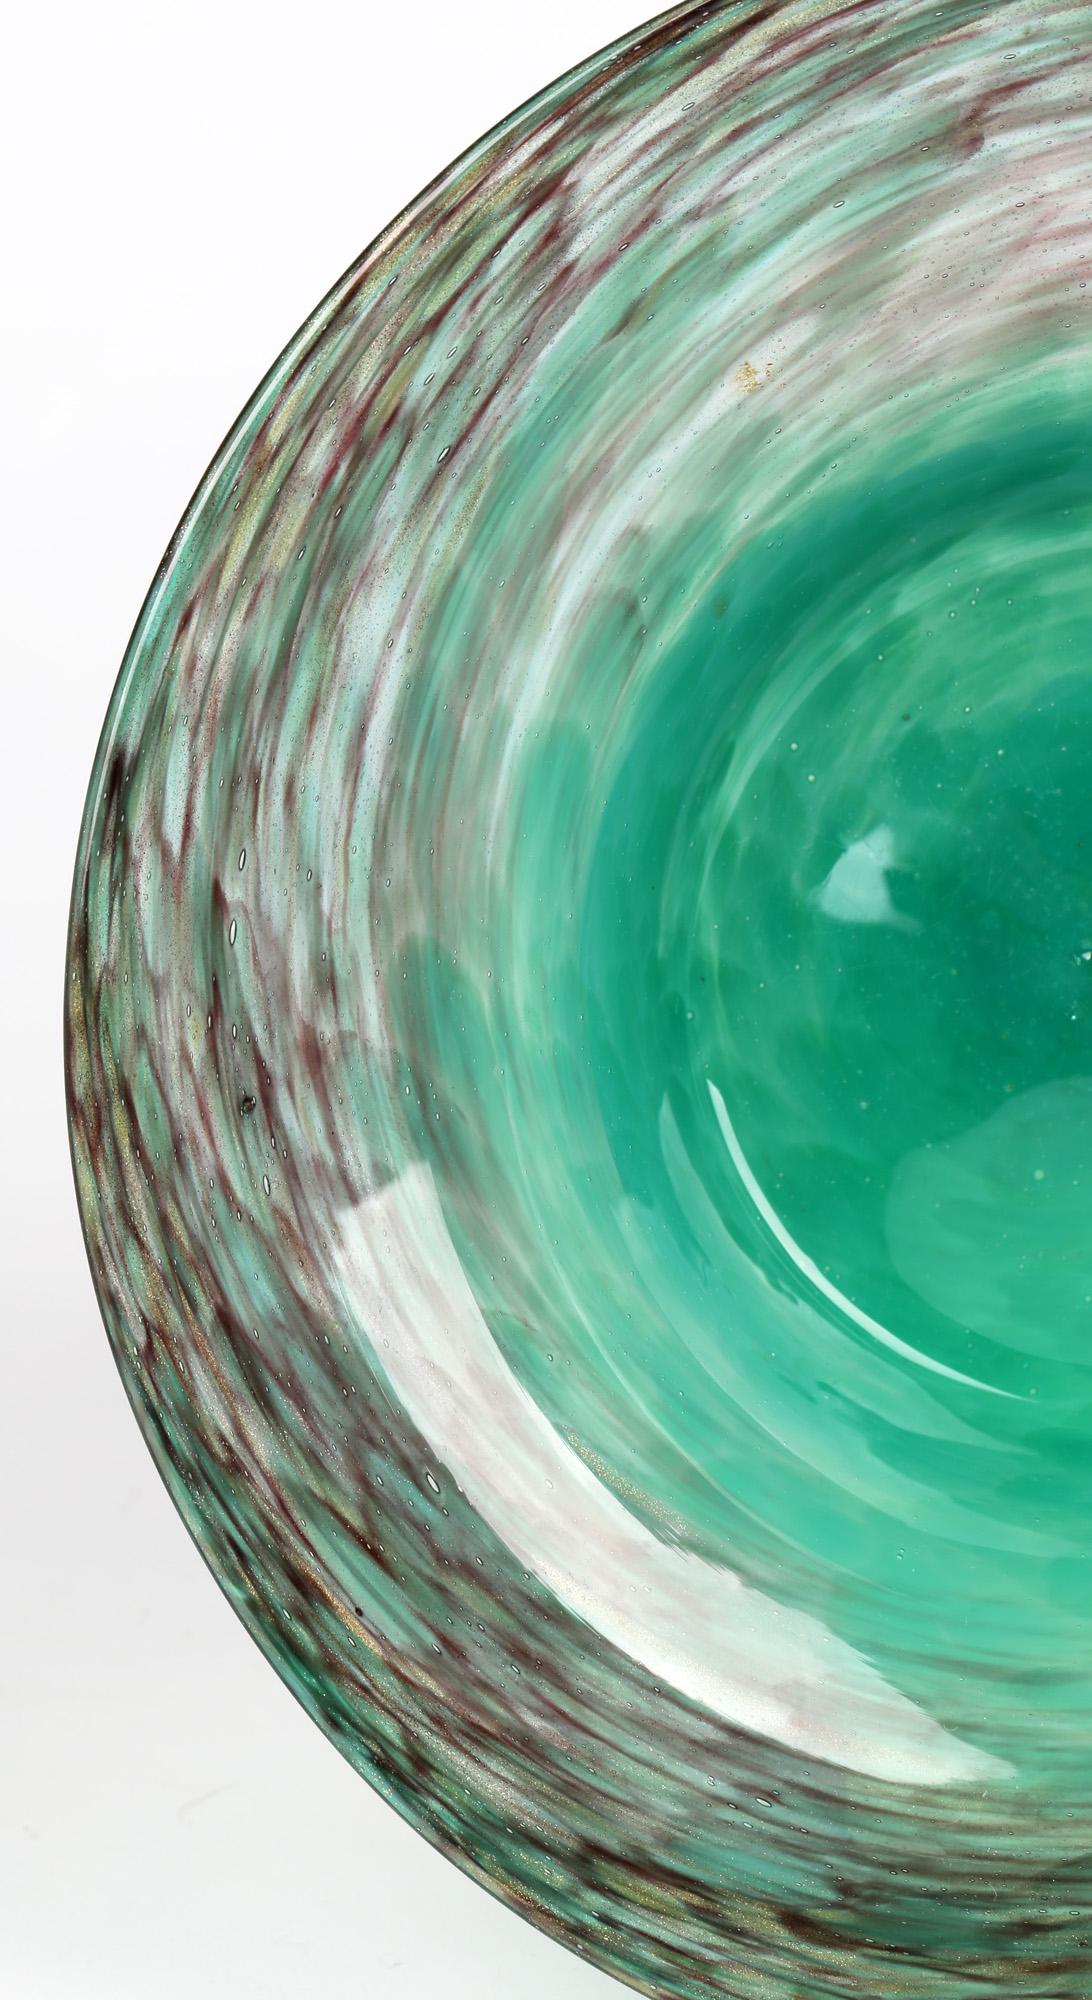 Eine hochwertige schottische Art-Déco-Glasschale mit leuchtendem türkisem und goldenem Aventurin-Muster von Monart. Die runde Kunstglasschale hat eine vertiefte Mitte mit einem breiten Rand und hat eine helle gesprenkelte türkisfarbene Glasmitte mit